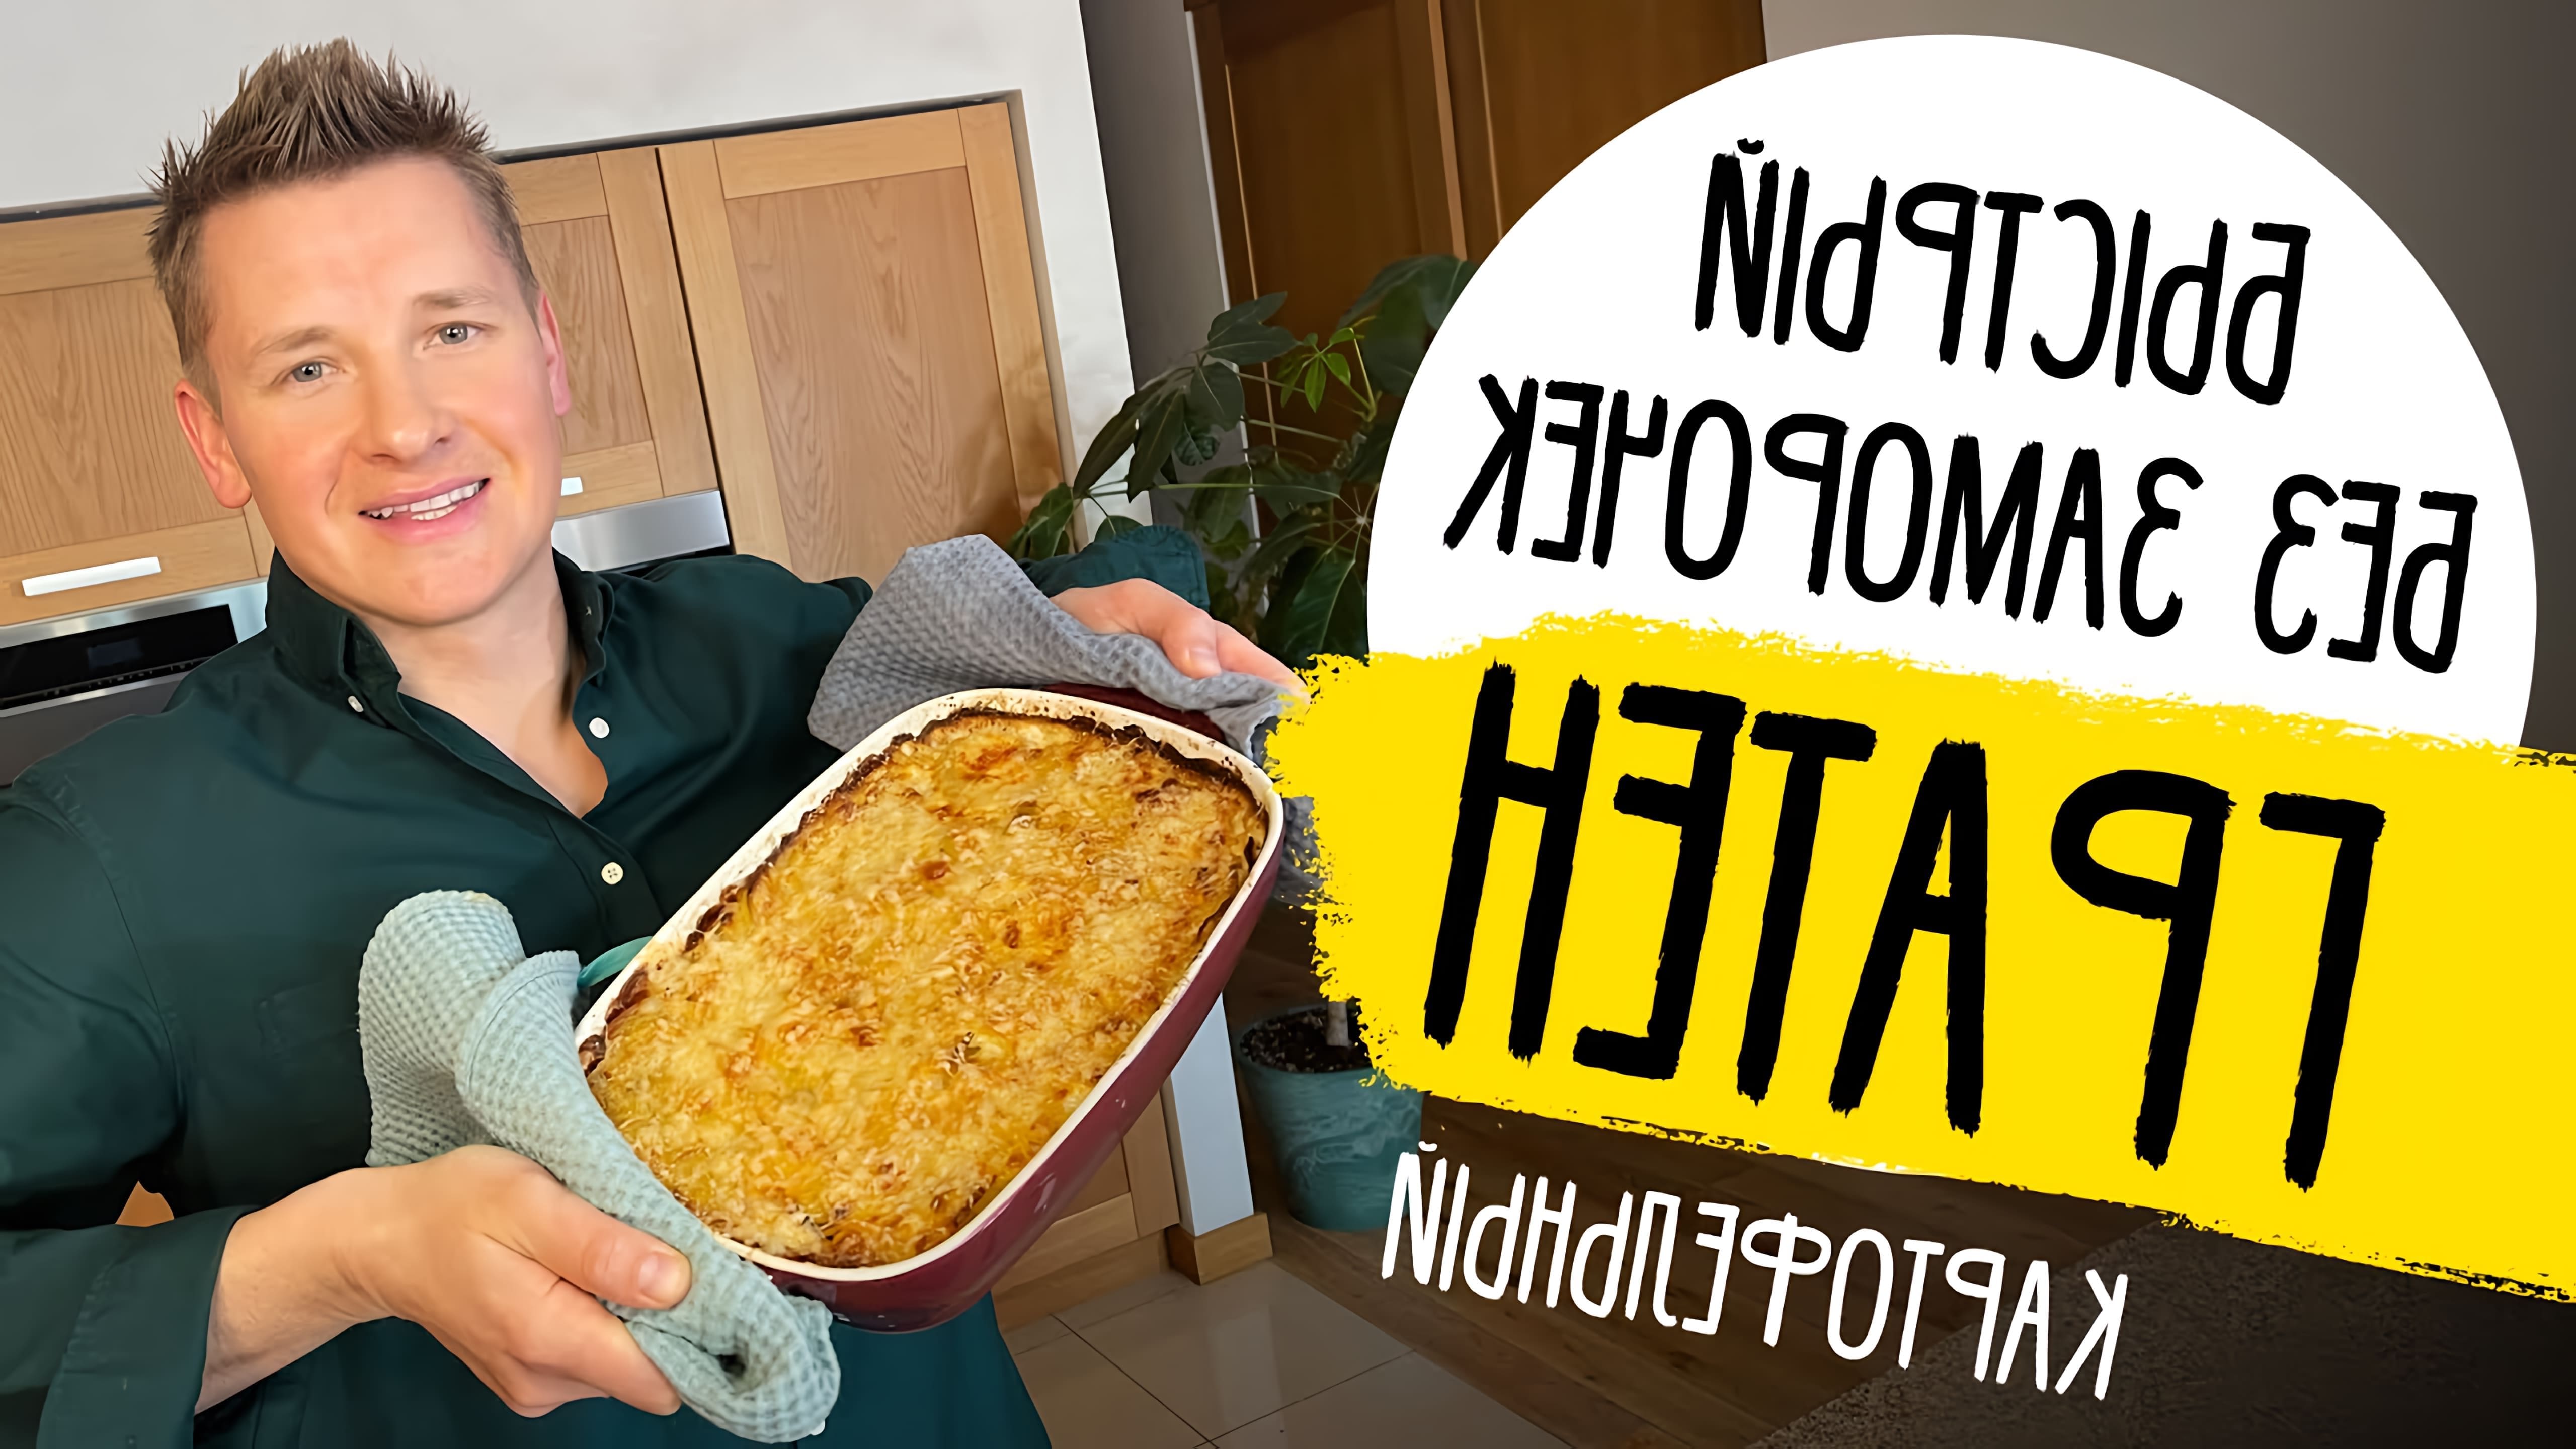 В этом видео шеф Белькович показывает, как приготовить картофельный гратен - быструю и вкусную запеканку из картофеля, сыра и сливок